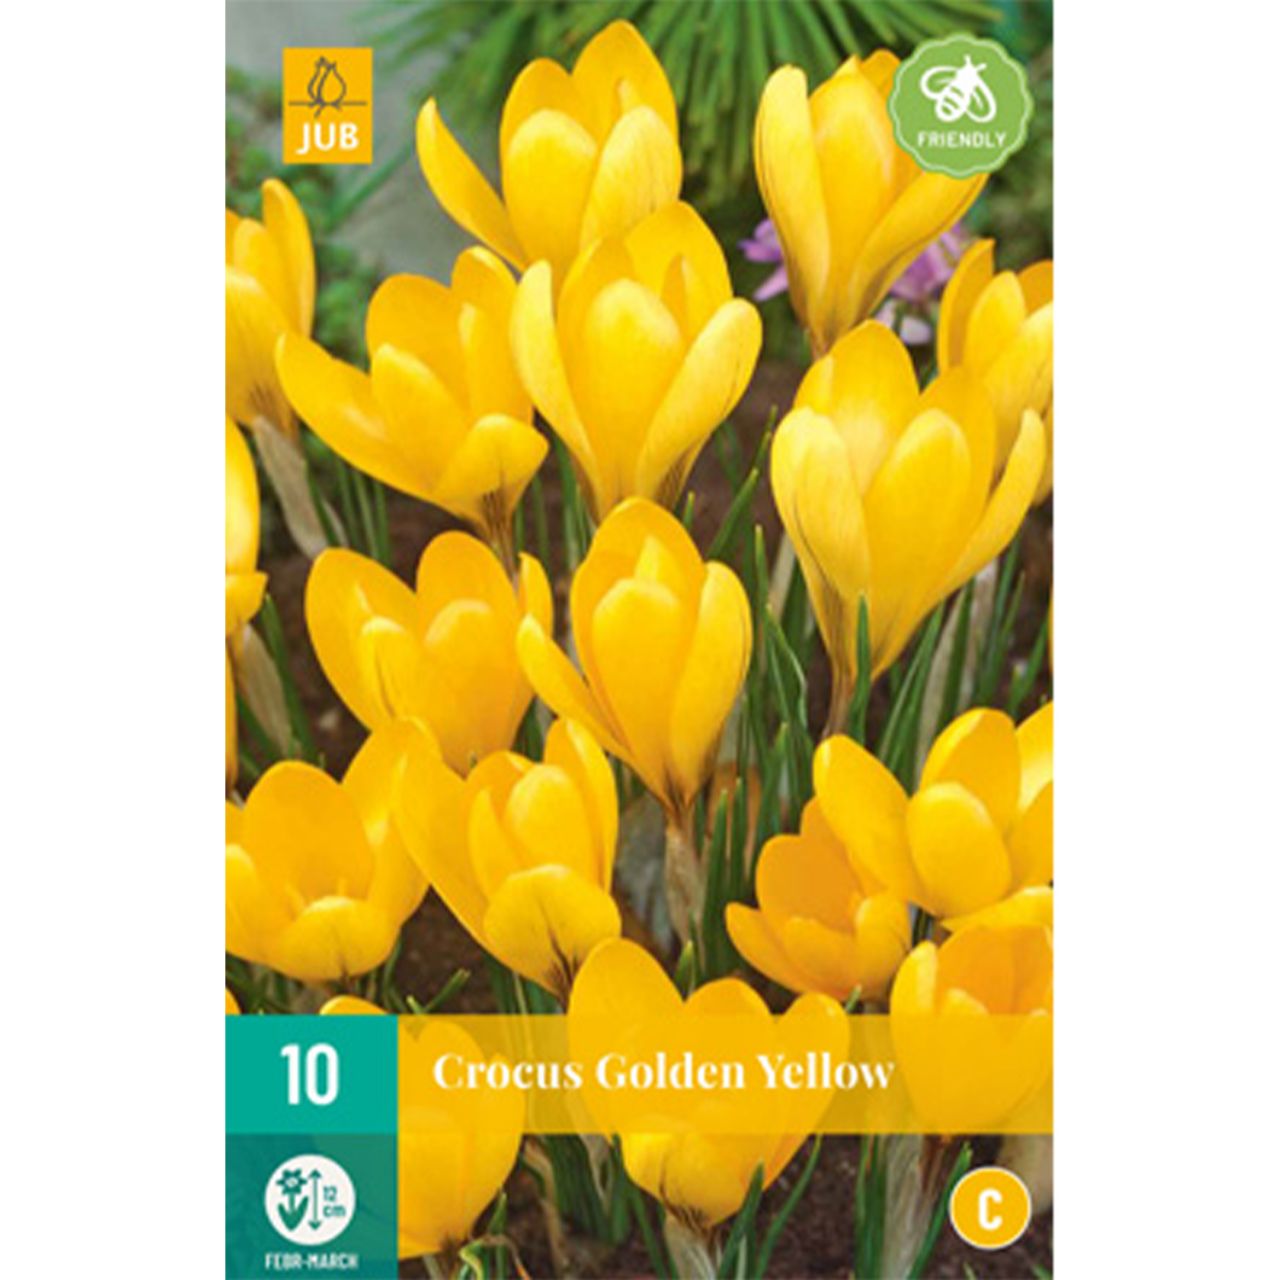 Kategorie <b>Herbst-Blumenzwiebeln </b> - Großblumige Krokusse 'Golden Yellow' - 10 Stück - Crocus 'Golden Yellow'